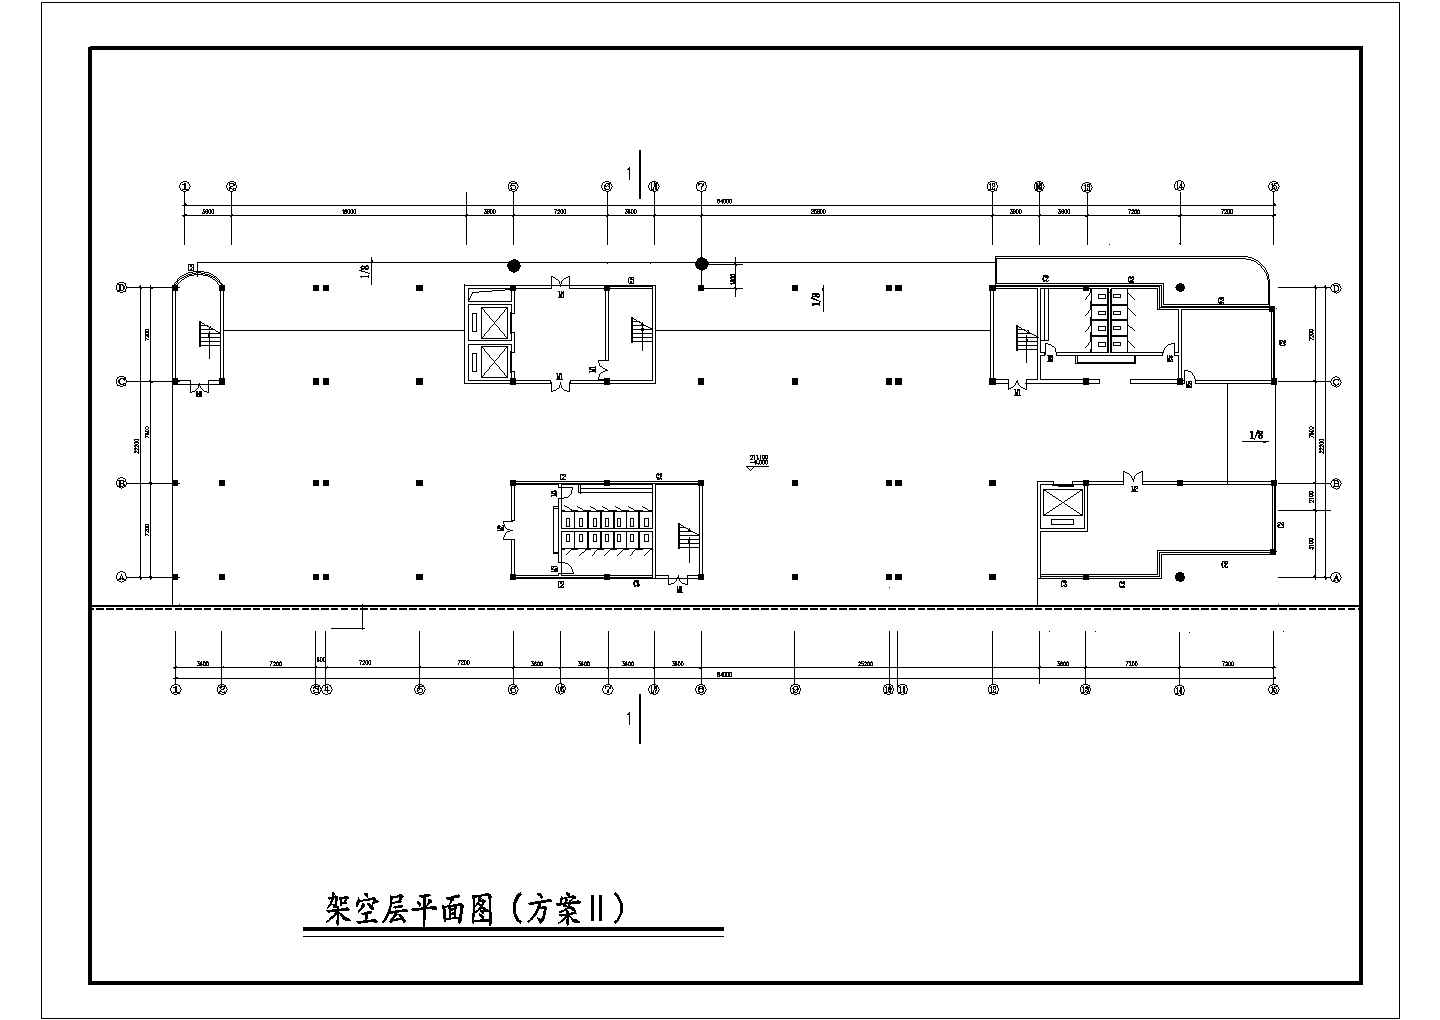 长84米 宽22.2米 9层客运站建筑设计2种方案